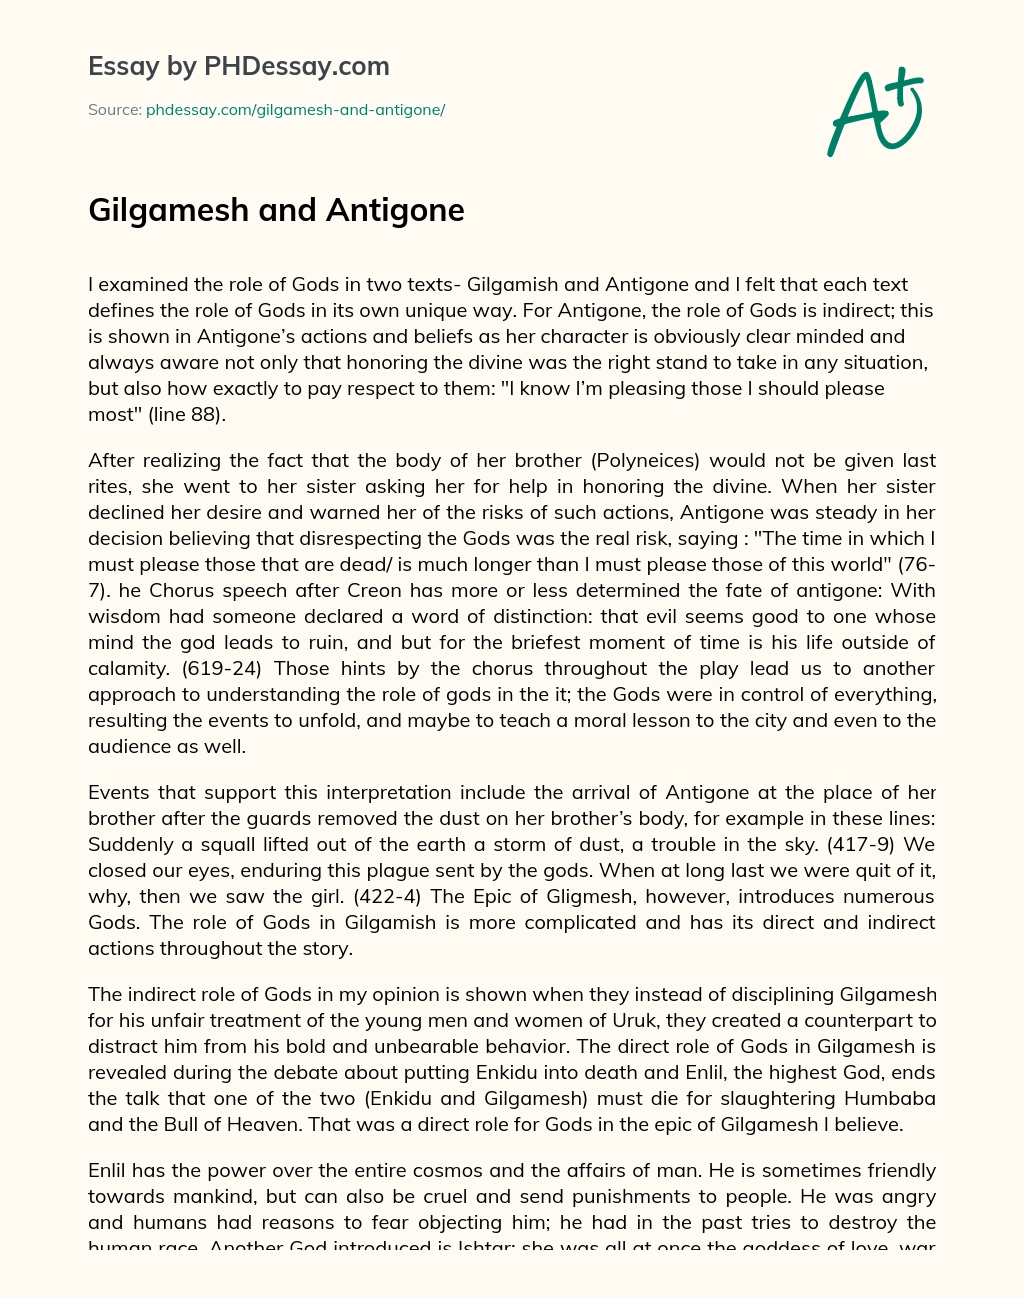 Gilgamesh and Antigone essay